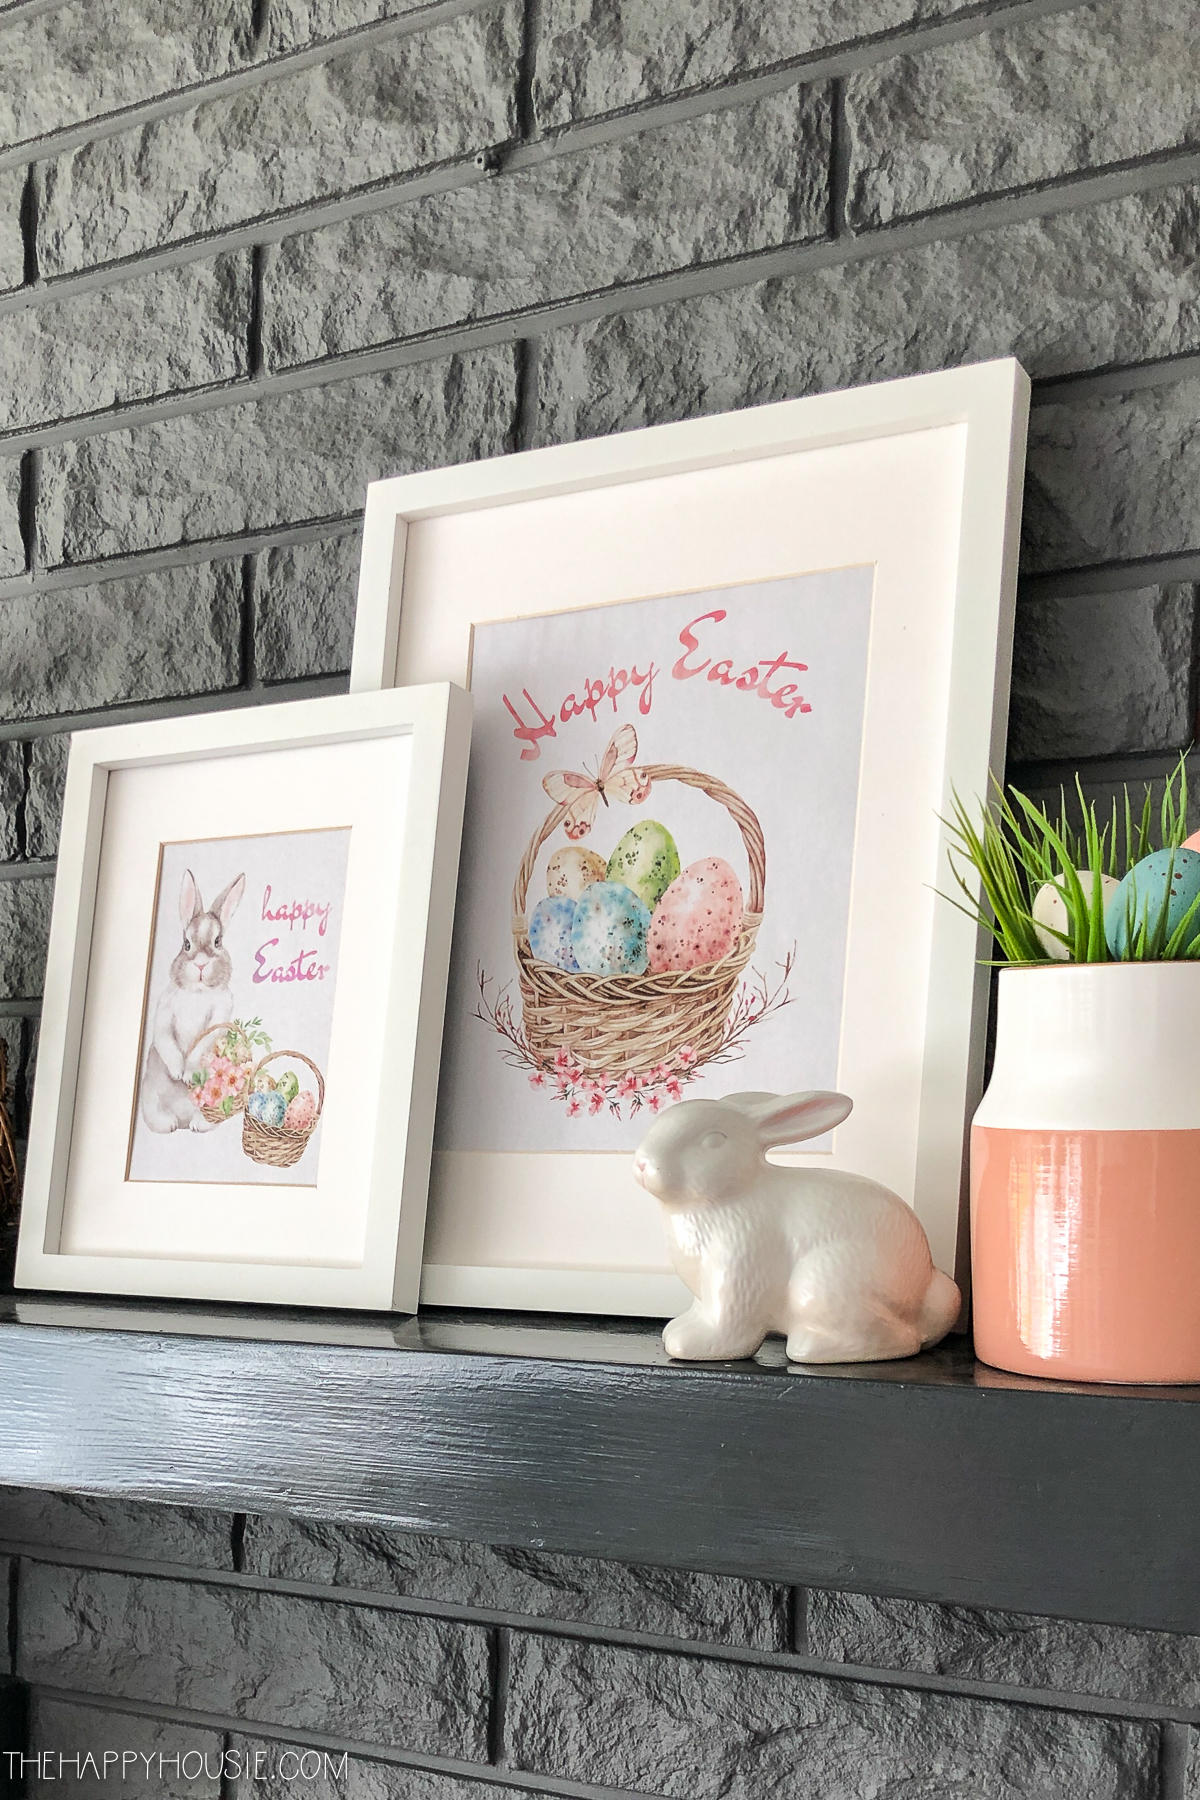 Framed Easter printable is on the shelves.